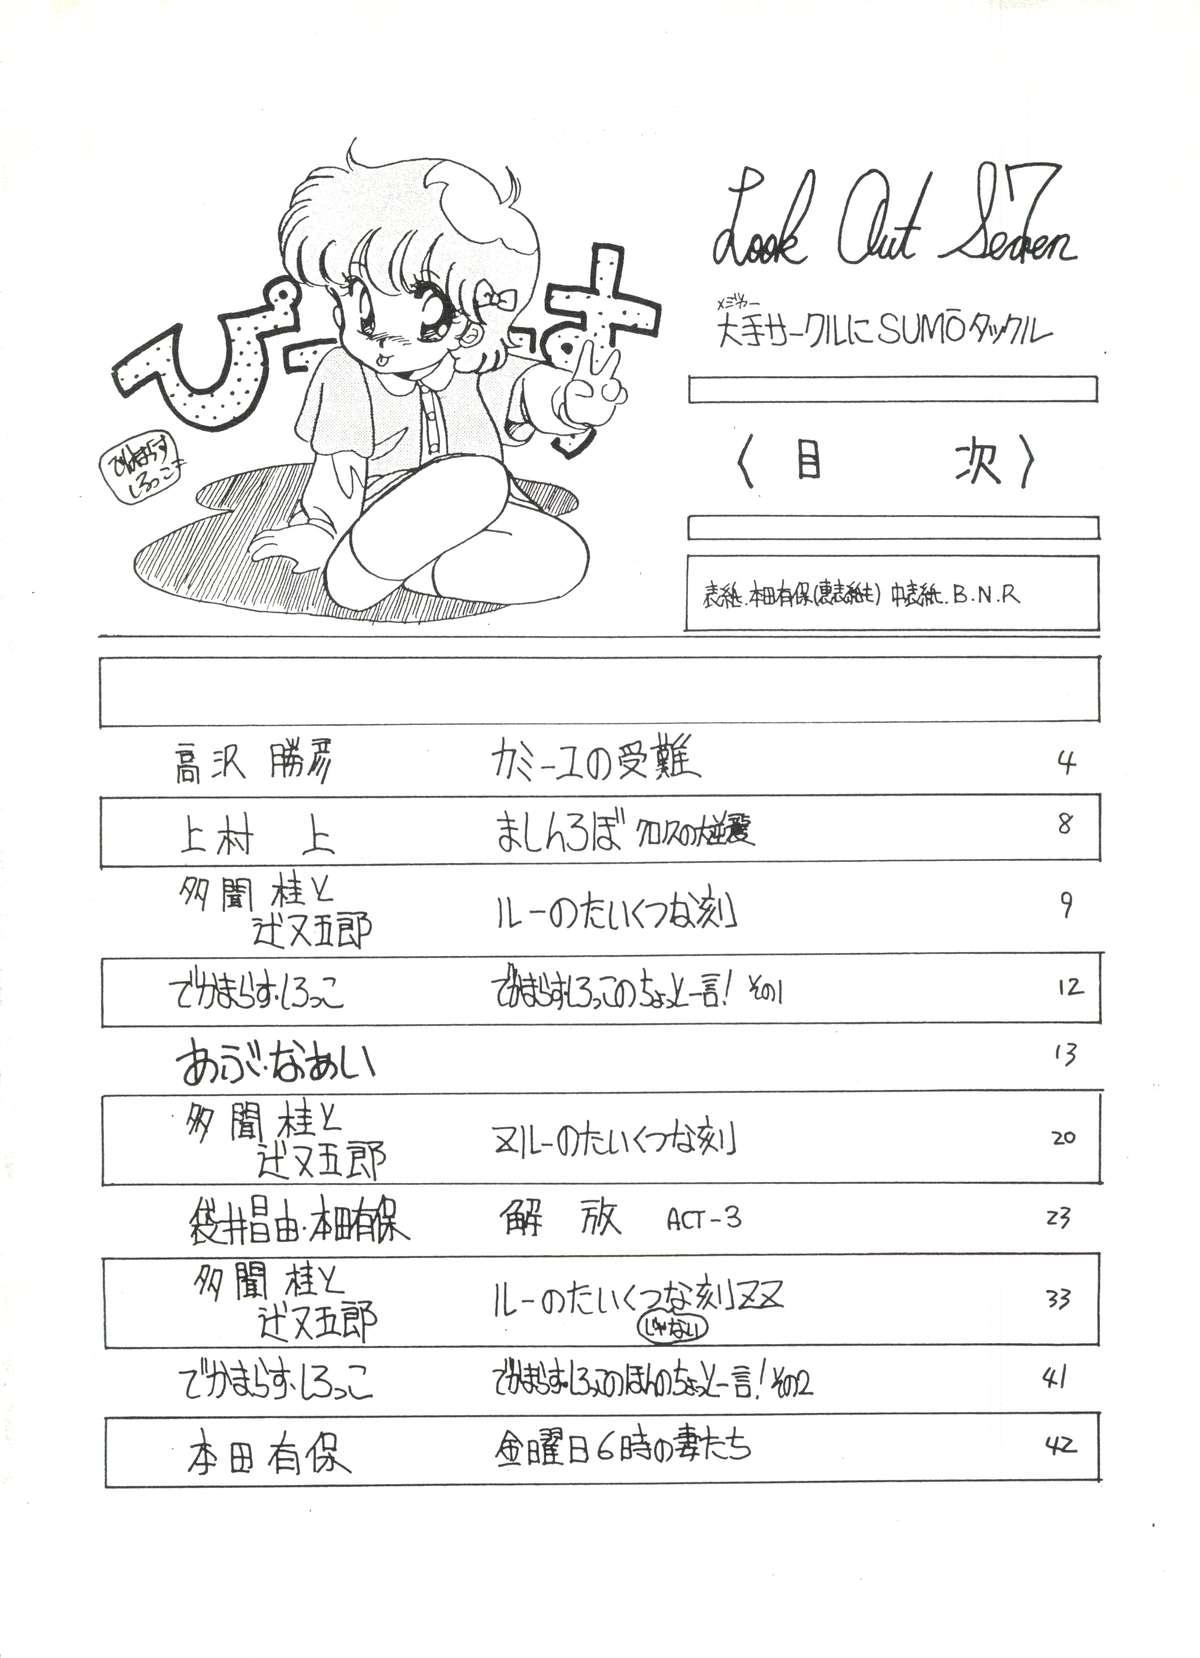 Anal Porn LOOK OUT 7 - Urusei yatsura Maison ikkoku Gundam zz Pastel yumi Slutty - Page 2